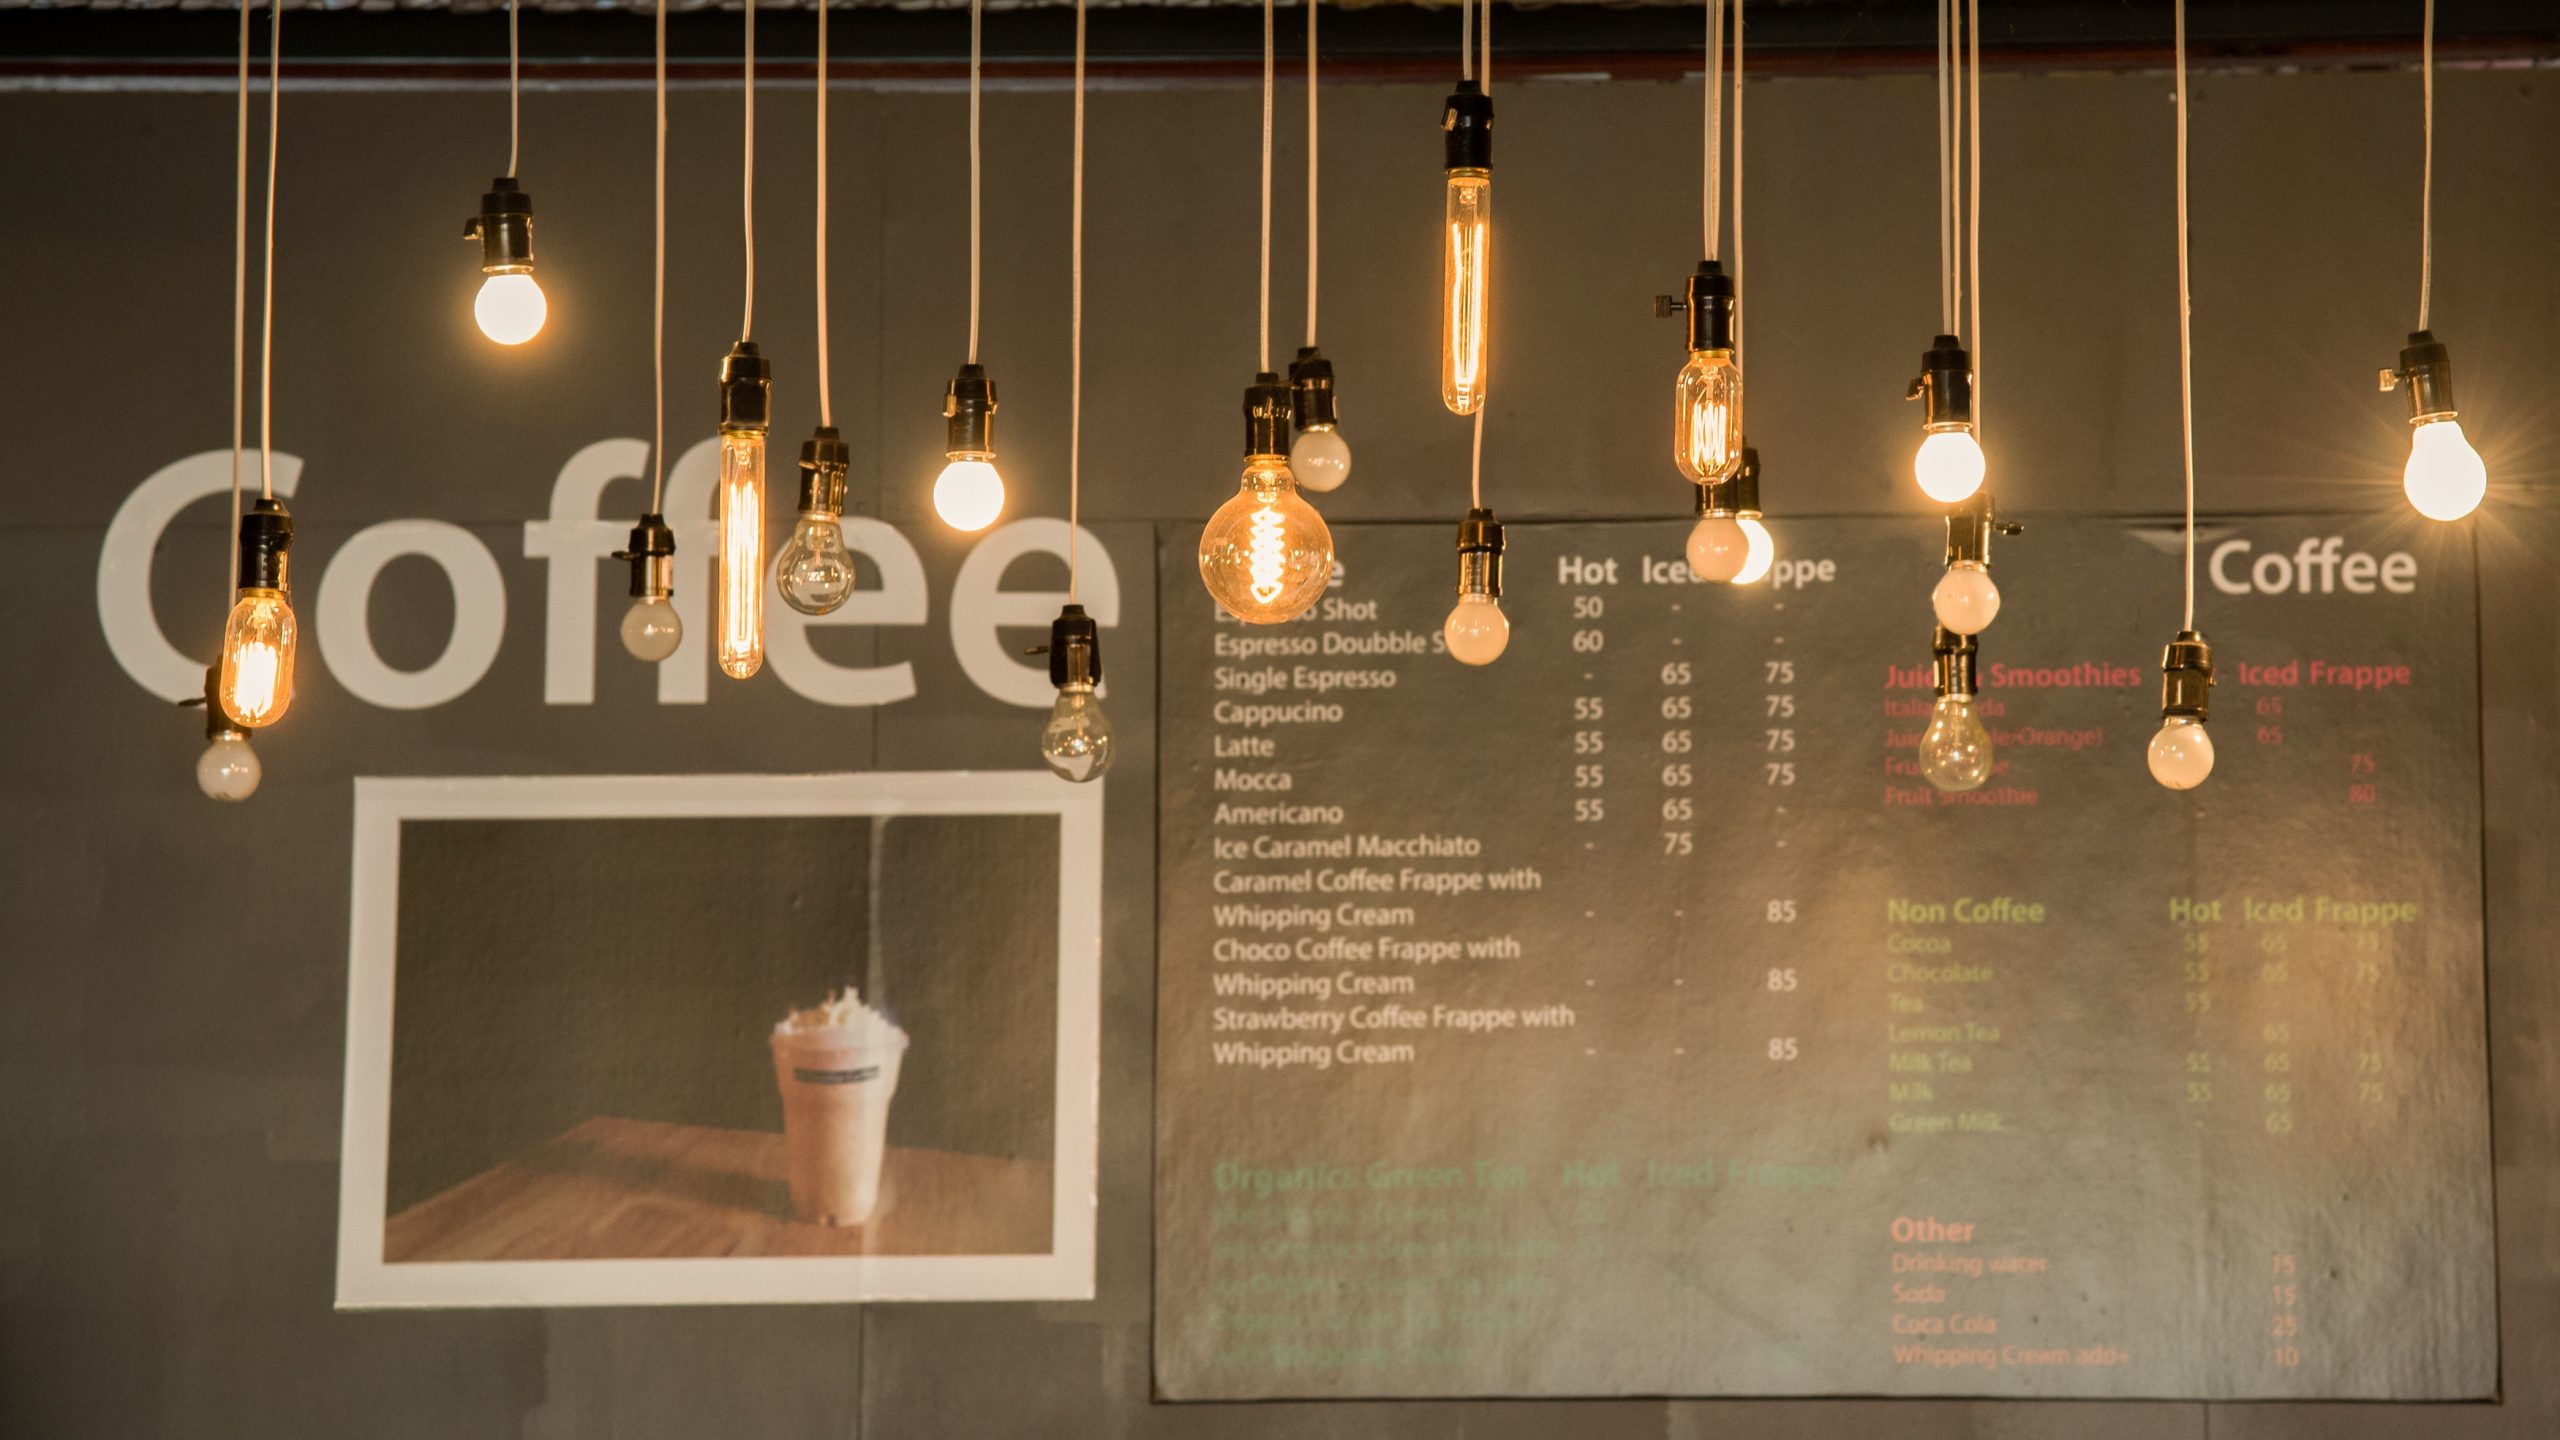 Tham khảo 5 mẫu đèn trang trí quán cà phê được yêu thích nhất hiện nay